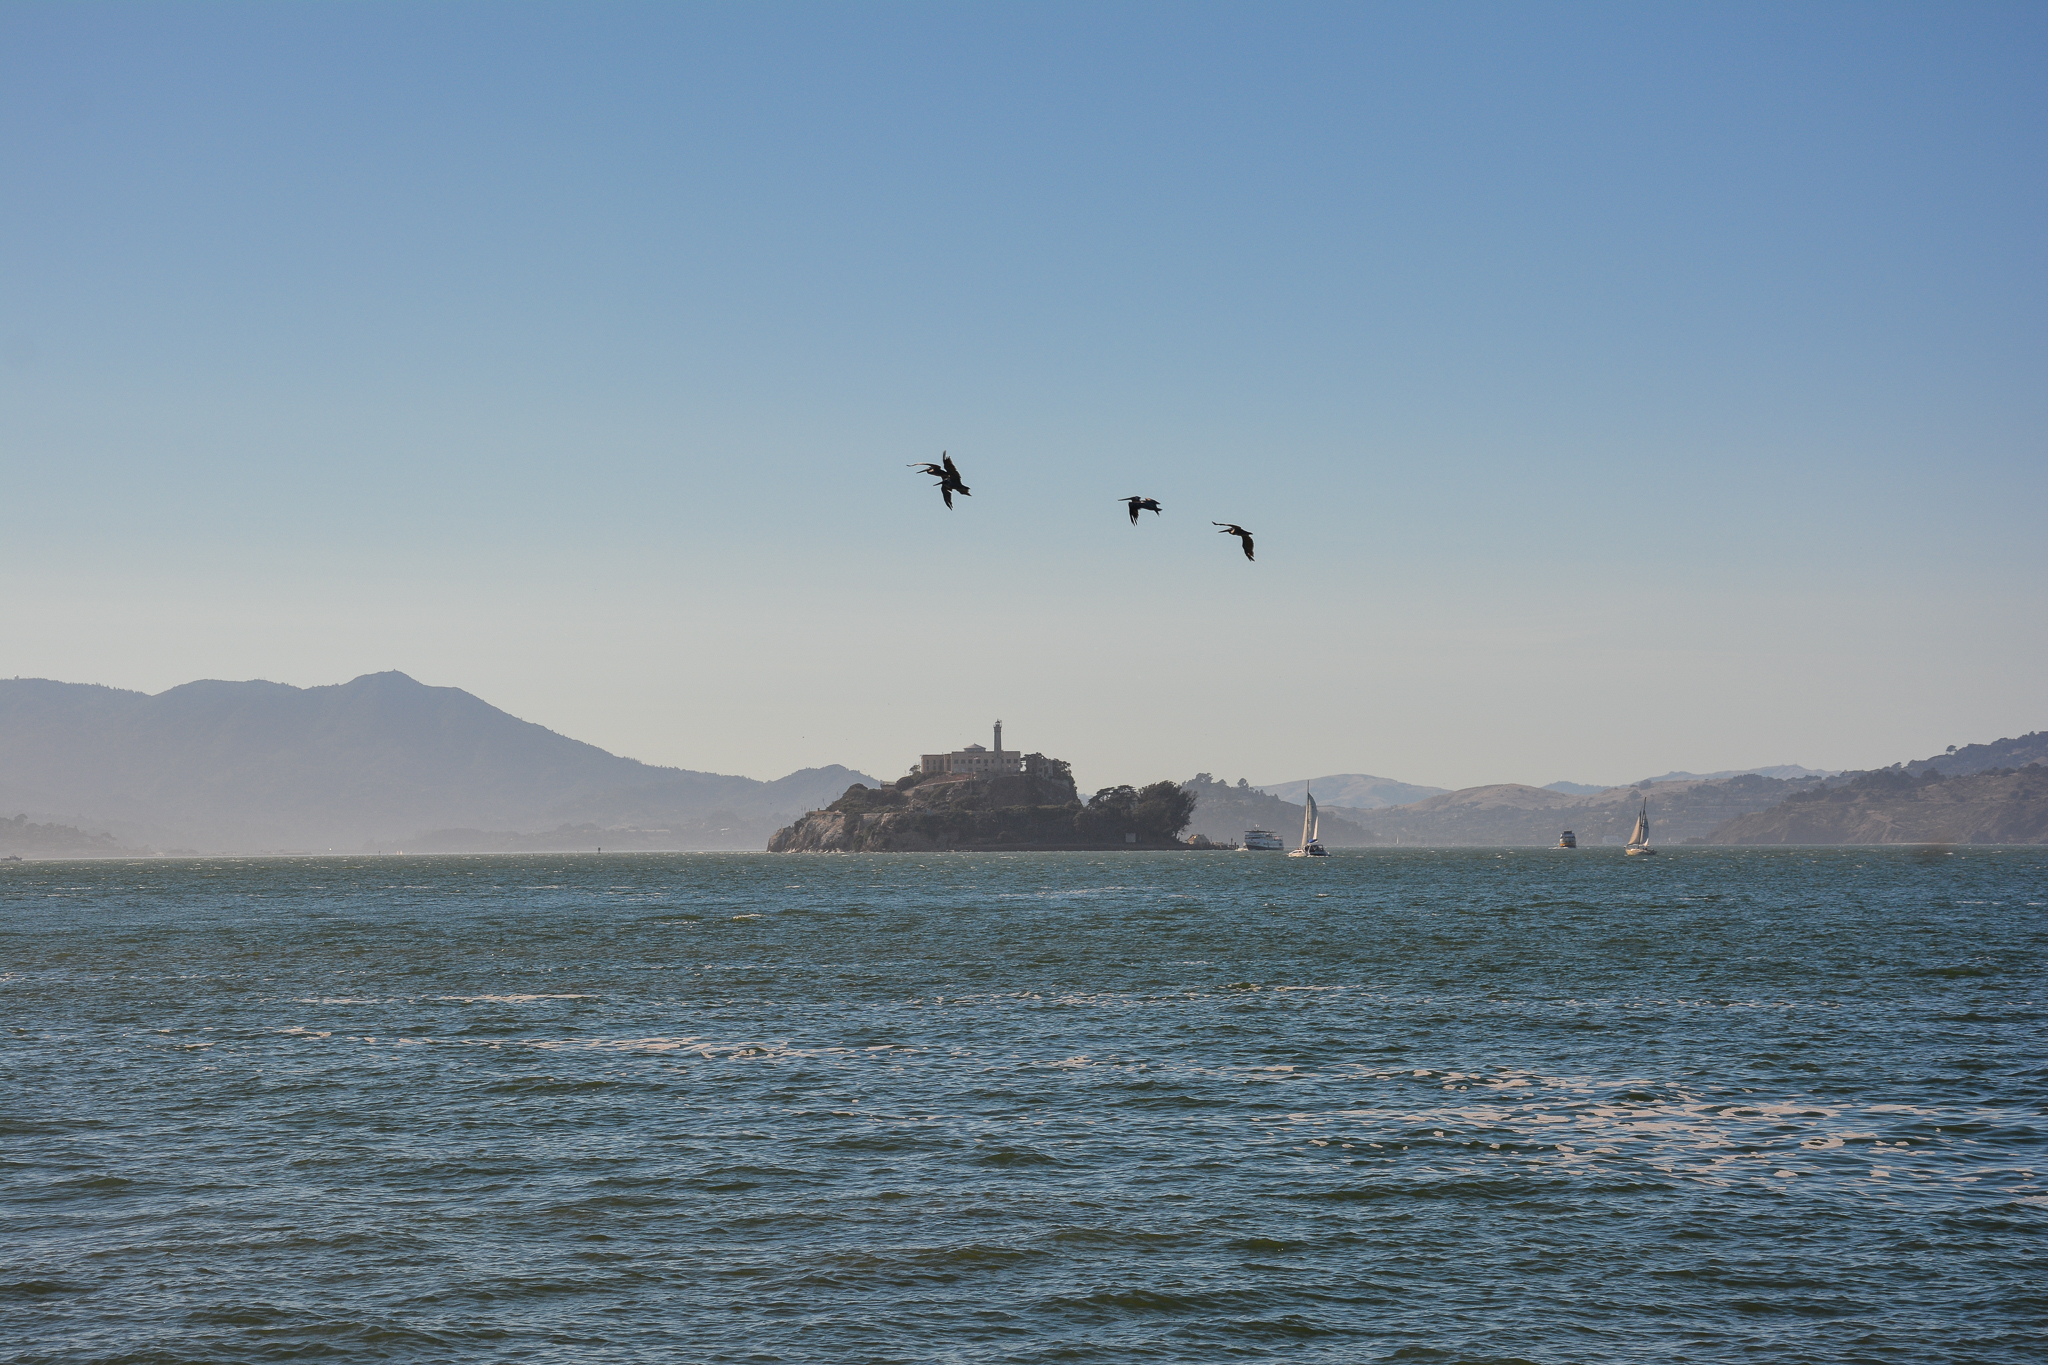 Alcatraz "The Rock" in San Francisco Bay